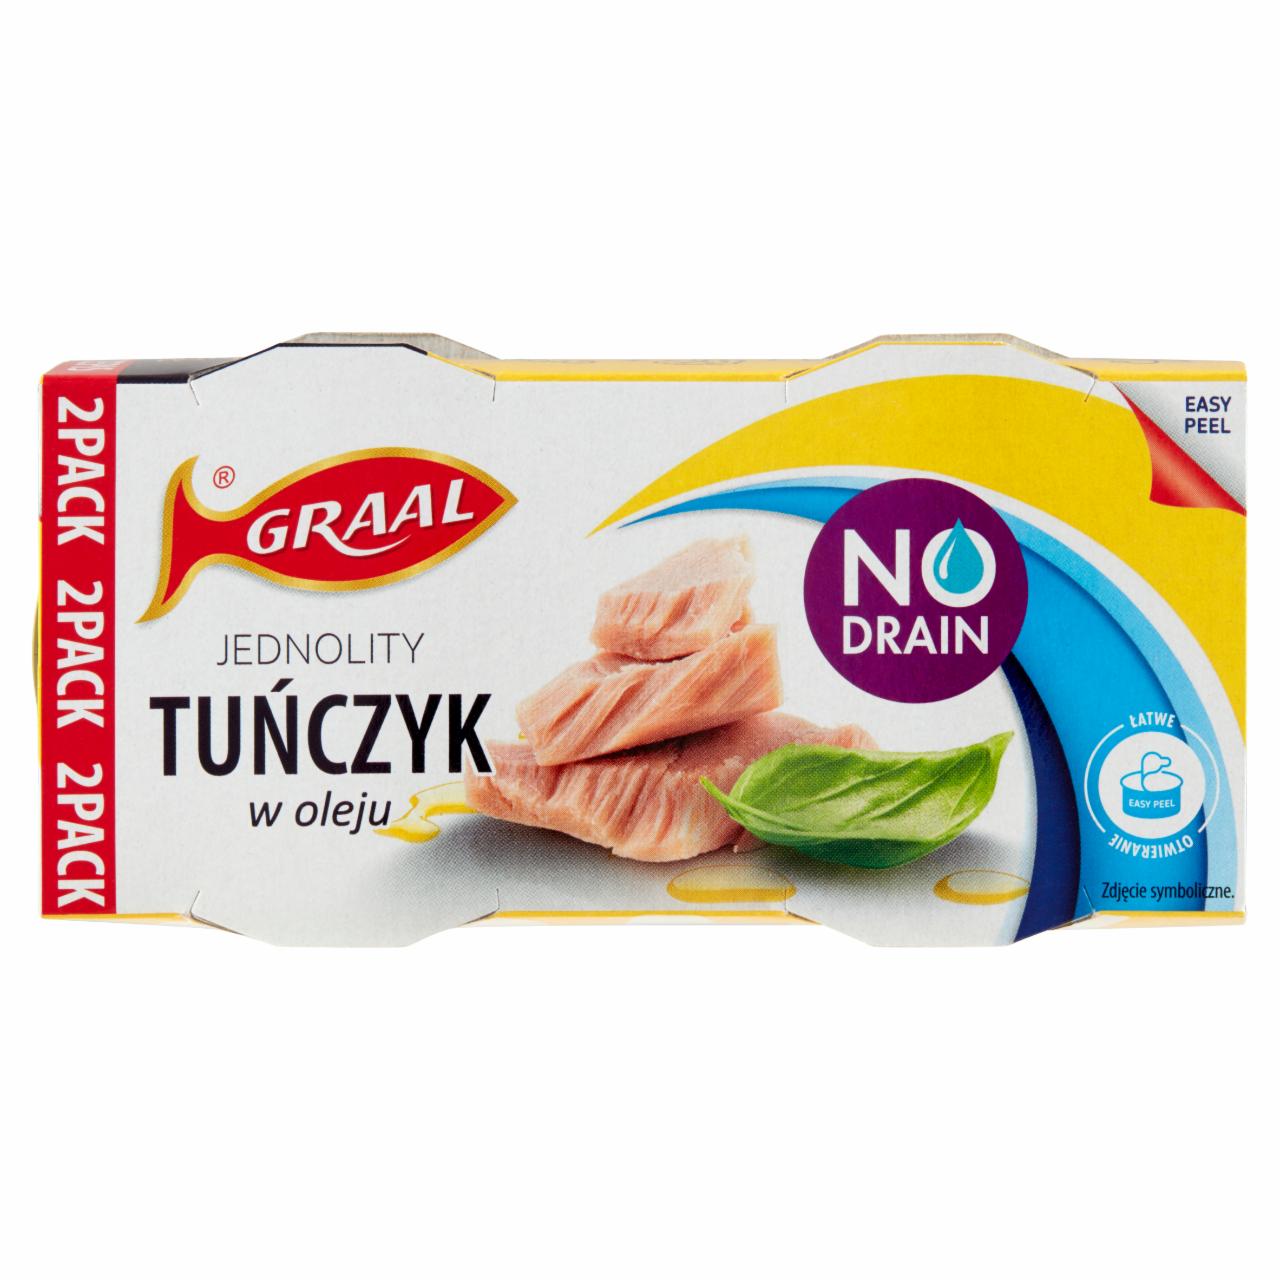 Zdjęcia - Graal Jednolity tuńczyk w oleju 120 g (2 x 60 g)